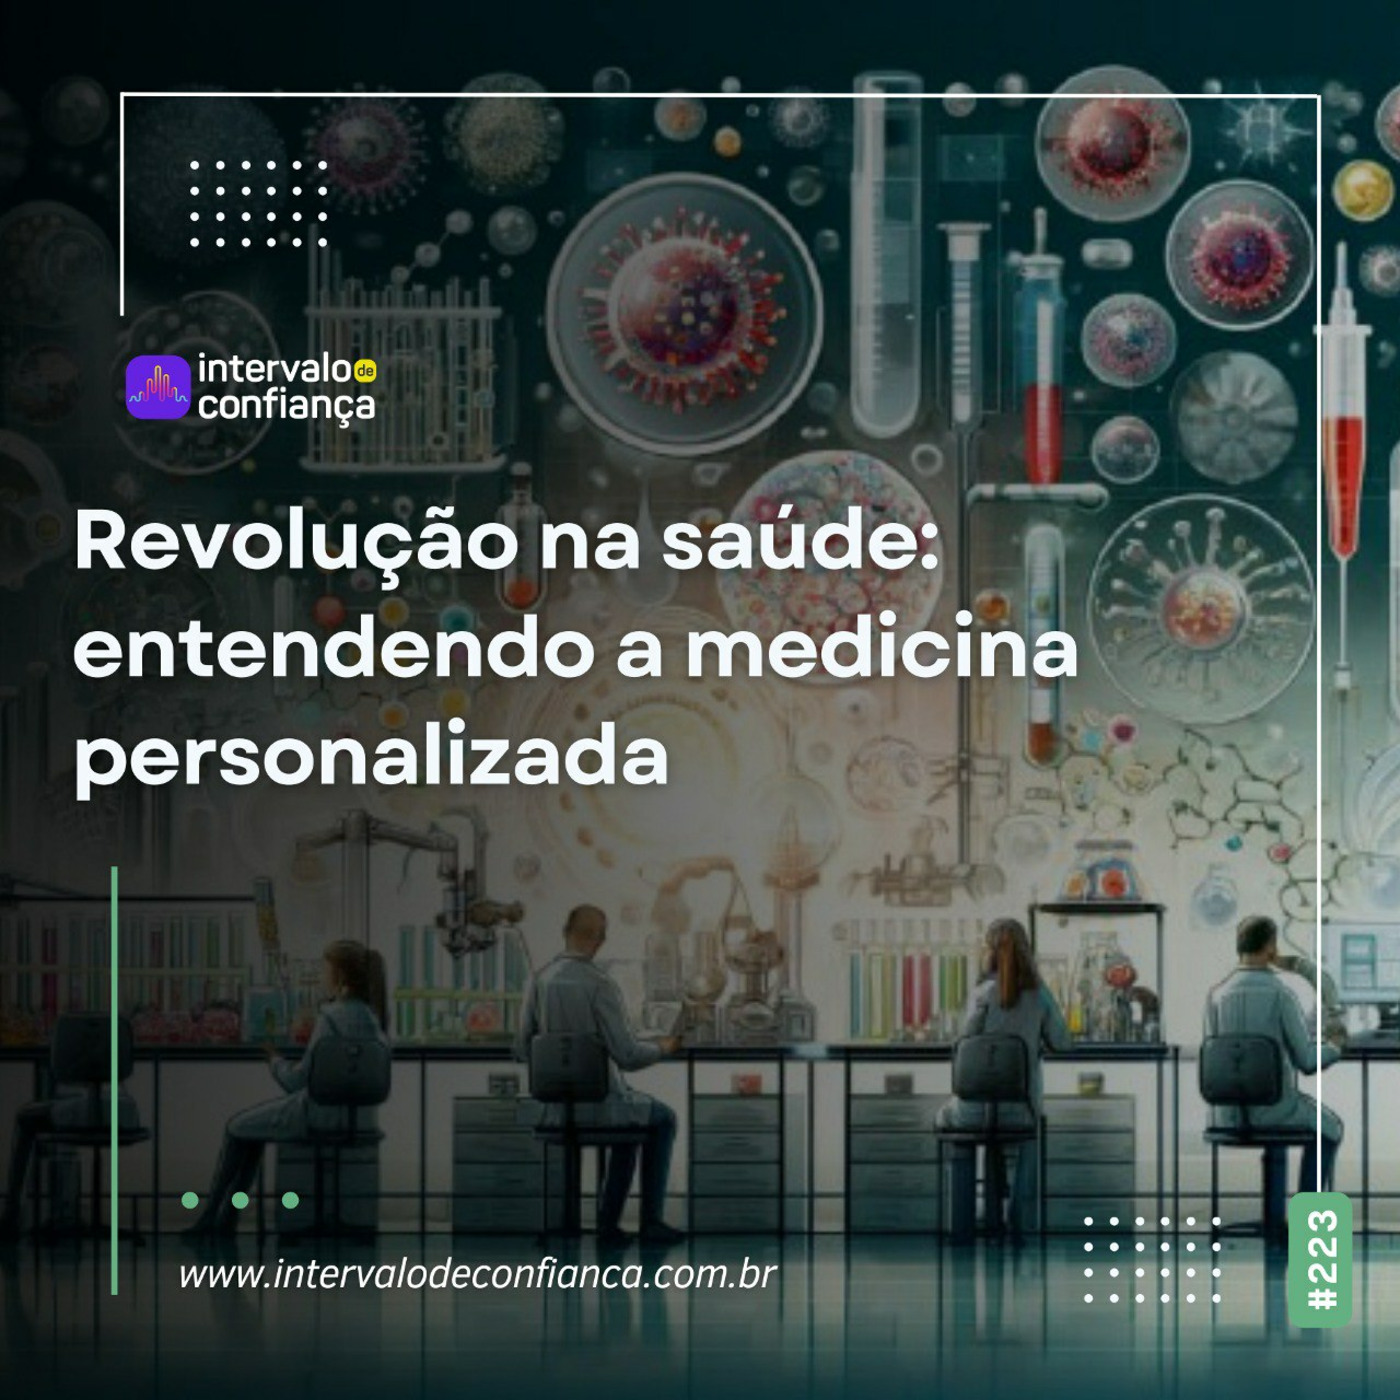 Episode 223: IC # 223- Revolução na Saúde: Entendendo a Medicina Personalizada